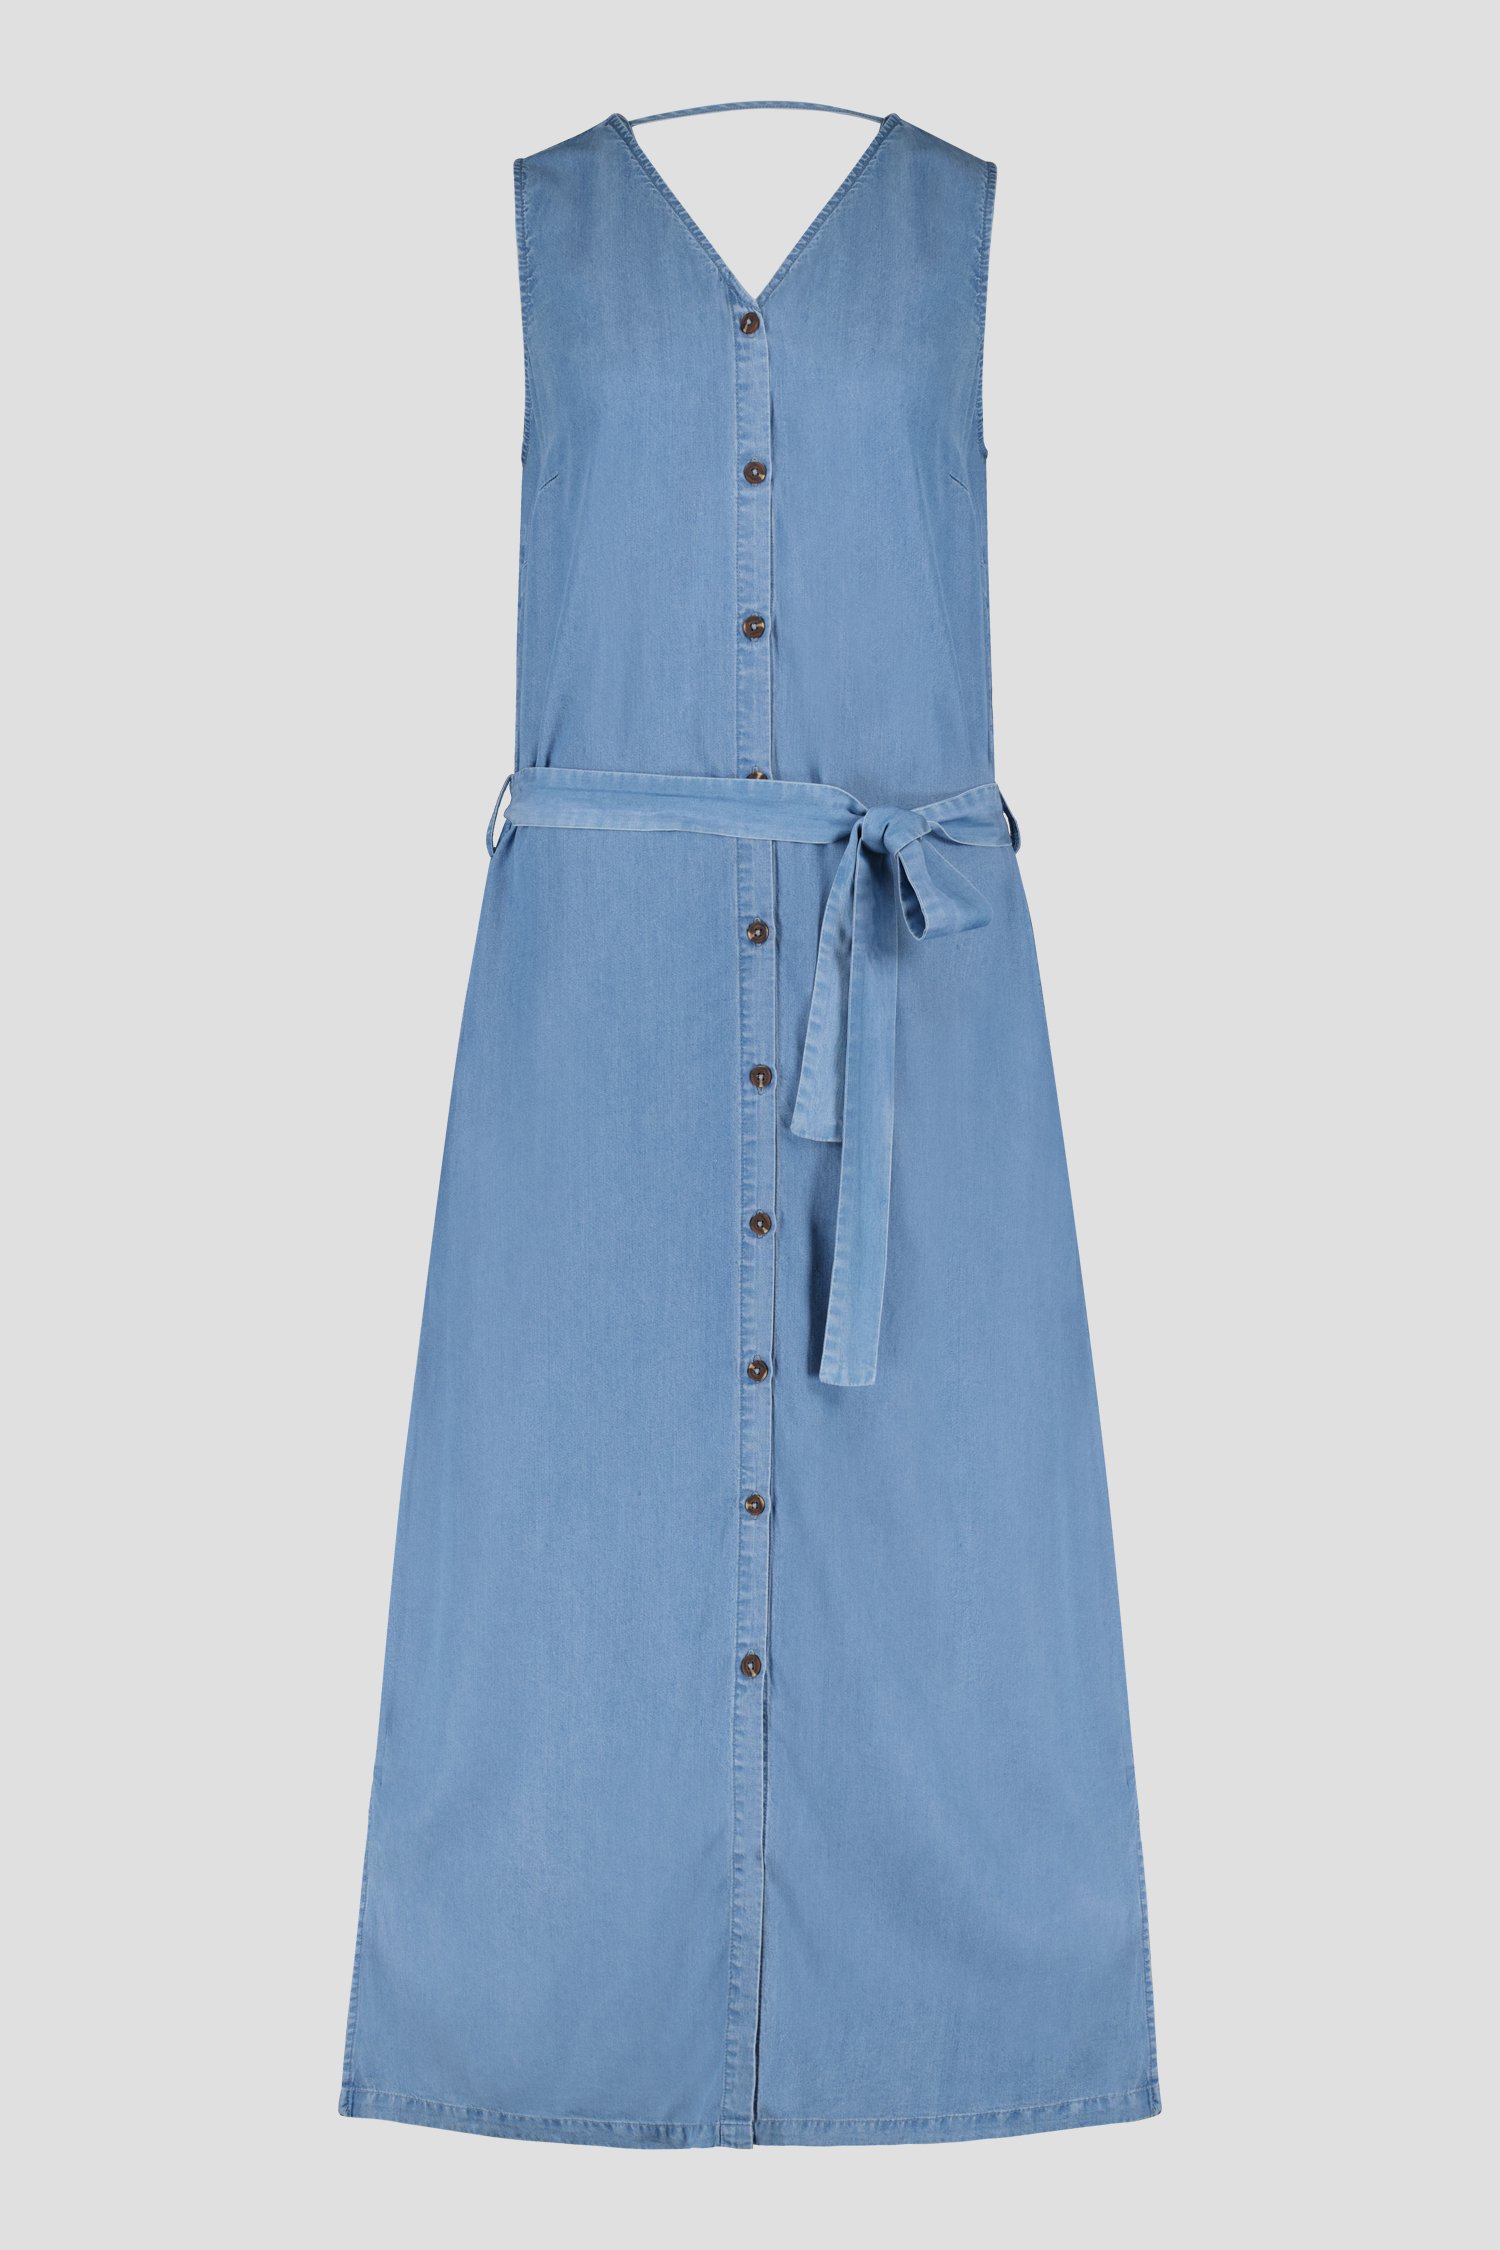 Lang jeansblauw kleedje van Libelle voor Dames